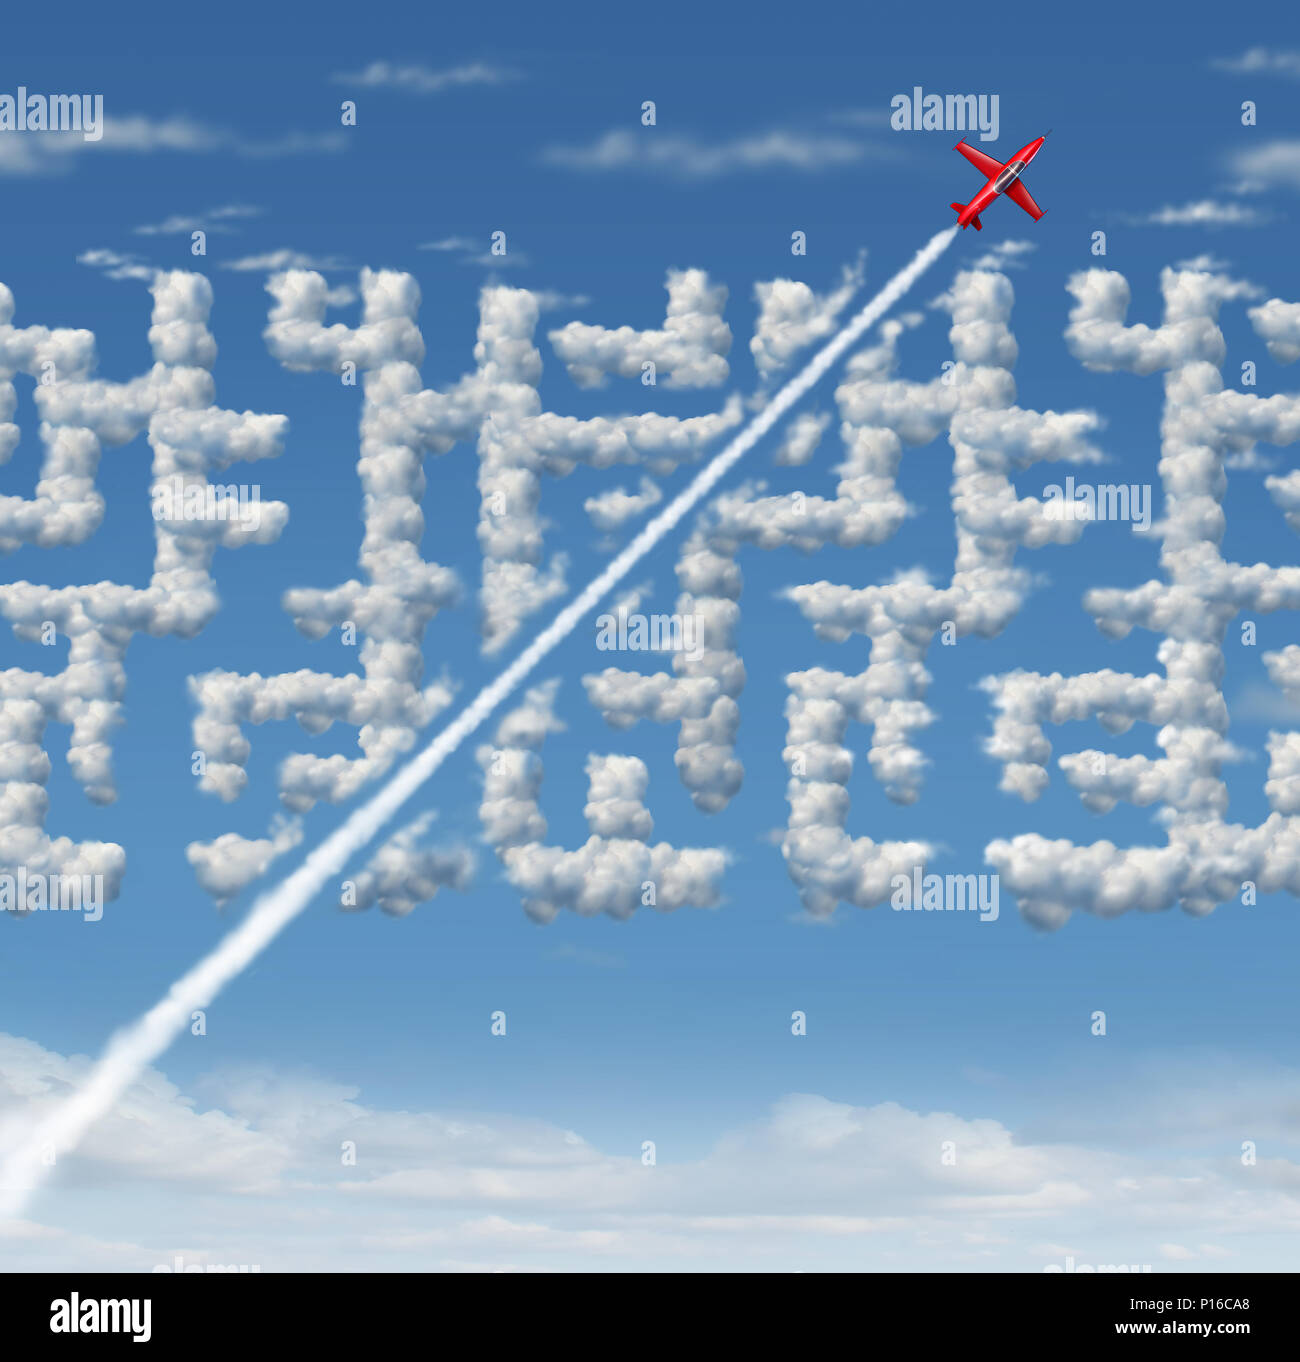 Business Leader Konzept als strategische innovativer Erfolg denken als ein Flugzeug, einen kurzen Schnitt zu einem Cloud Labyrinth mit 3D-Illustration Elemente. Stockfoto